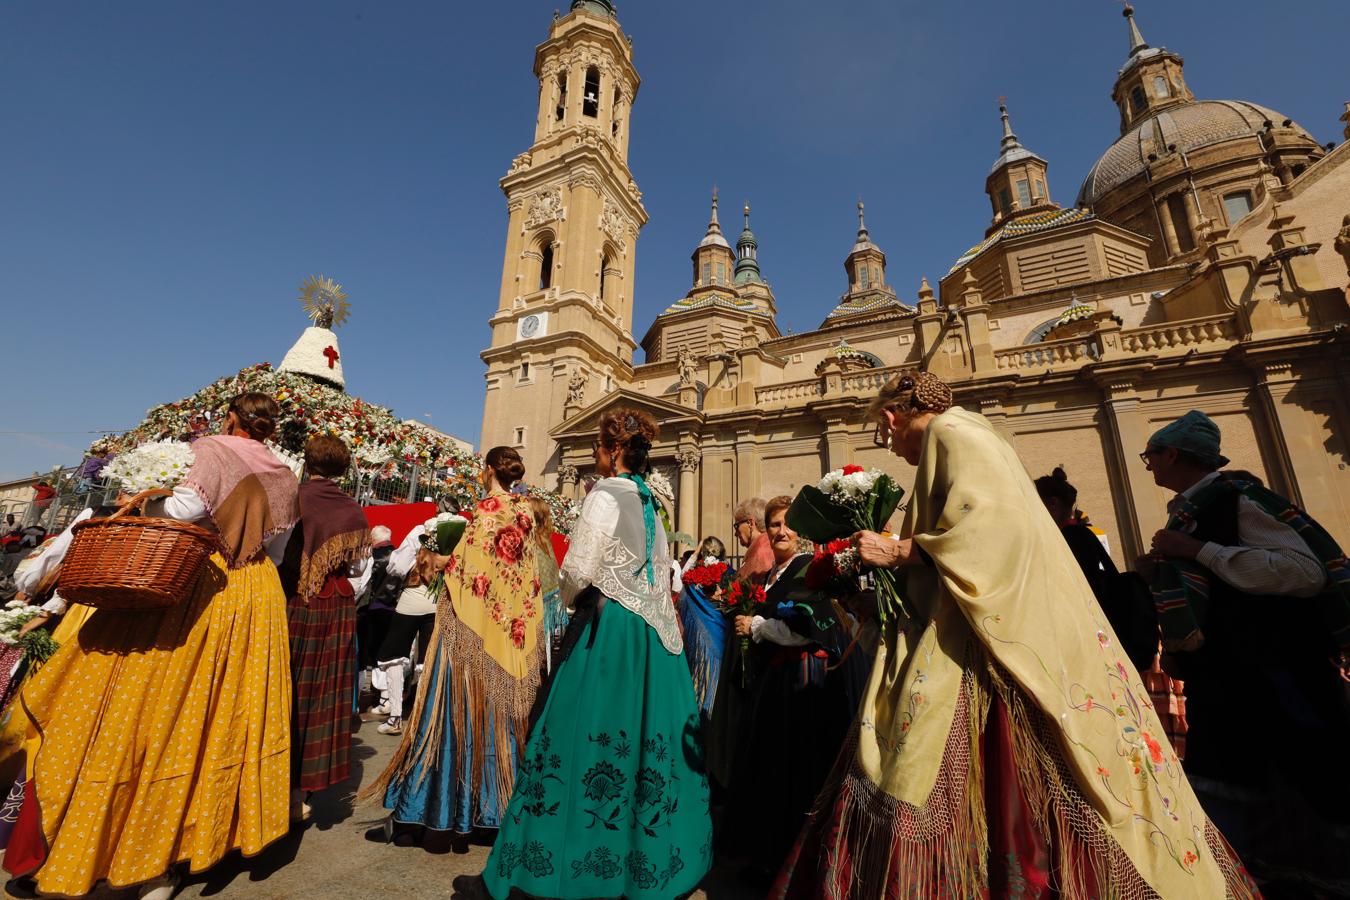 Bella muestra del traje típico aragonés. La Ofrenda es una auténtica exhibición de folclore en el que sobresale el traje típico aragonés, el más ampliamente representado. Toda una espléndida muestra de tradición en el traje regional